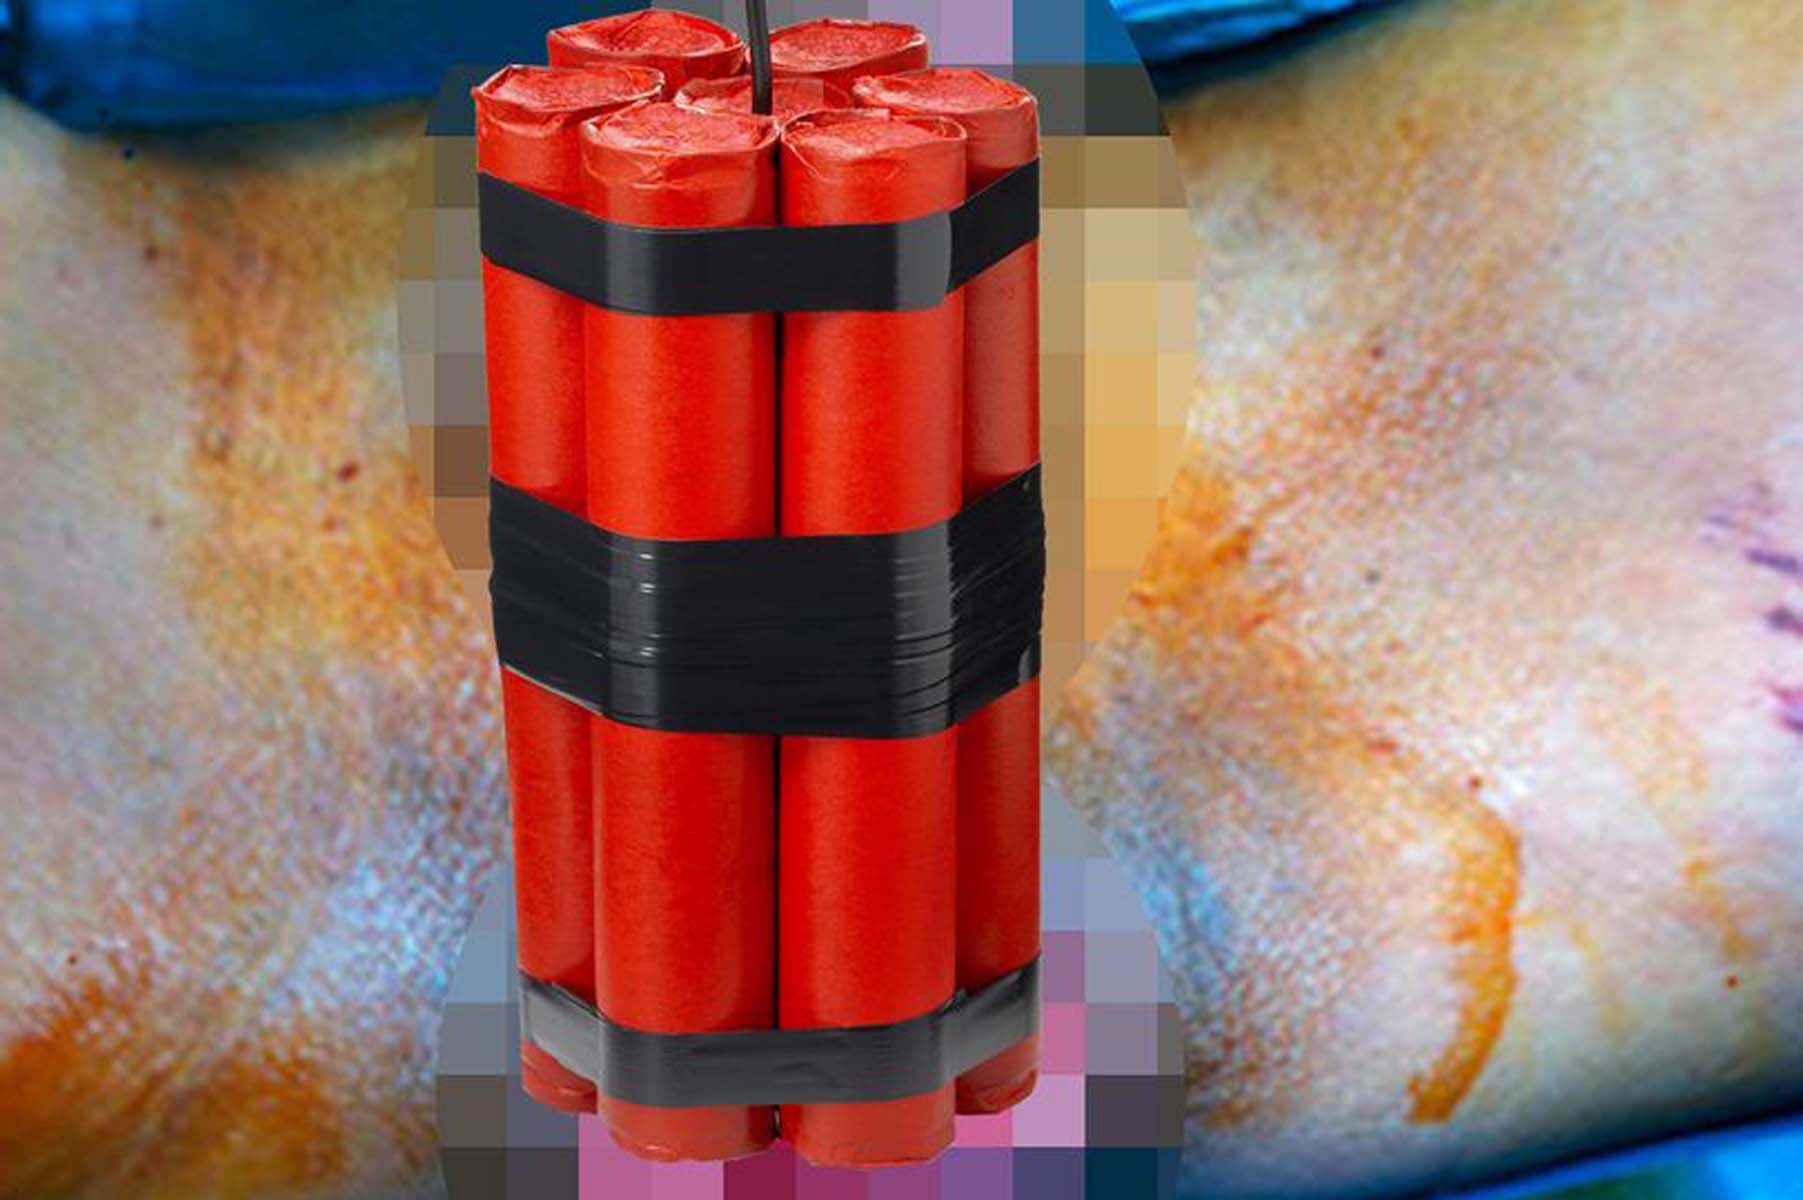 Tıp dergisine konu oldu! Denizli Pamukkale'de inanması güç olay: Poposuna dinamit benzeri cihaz koyup patlattı 